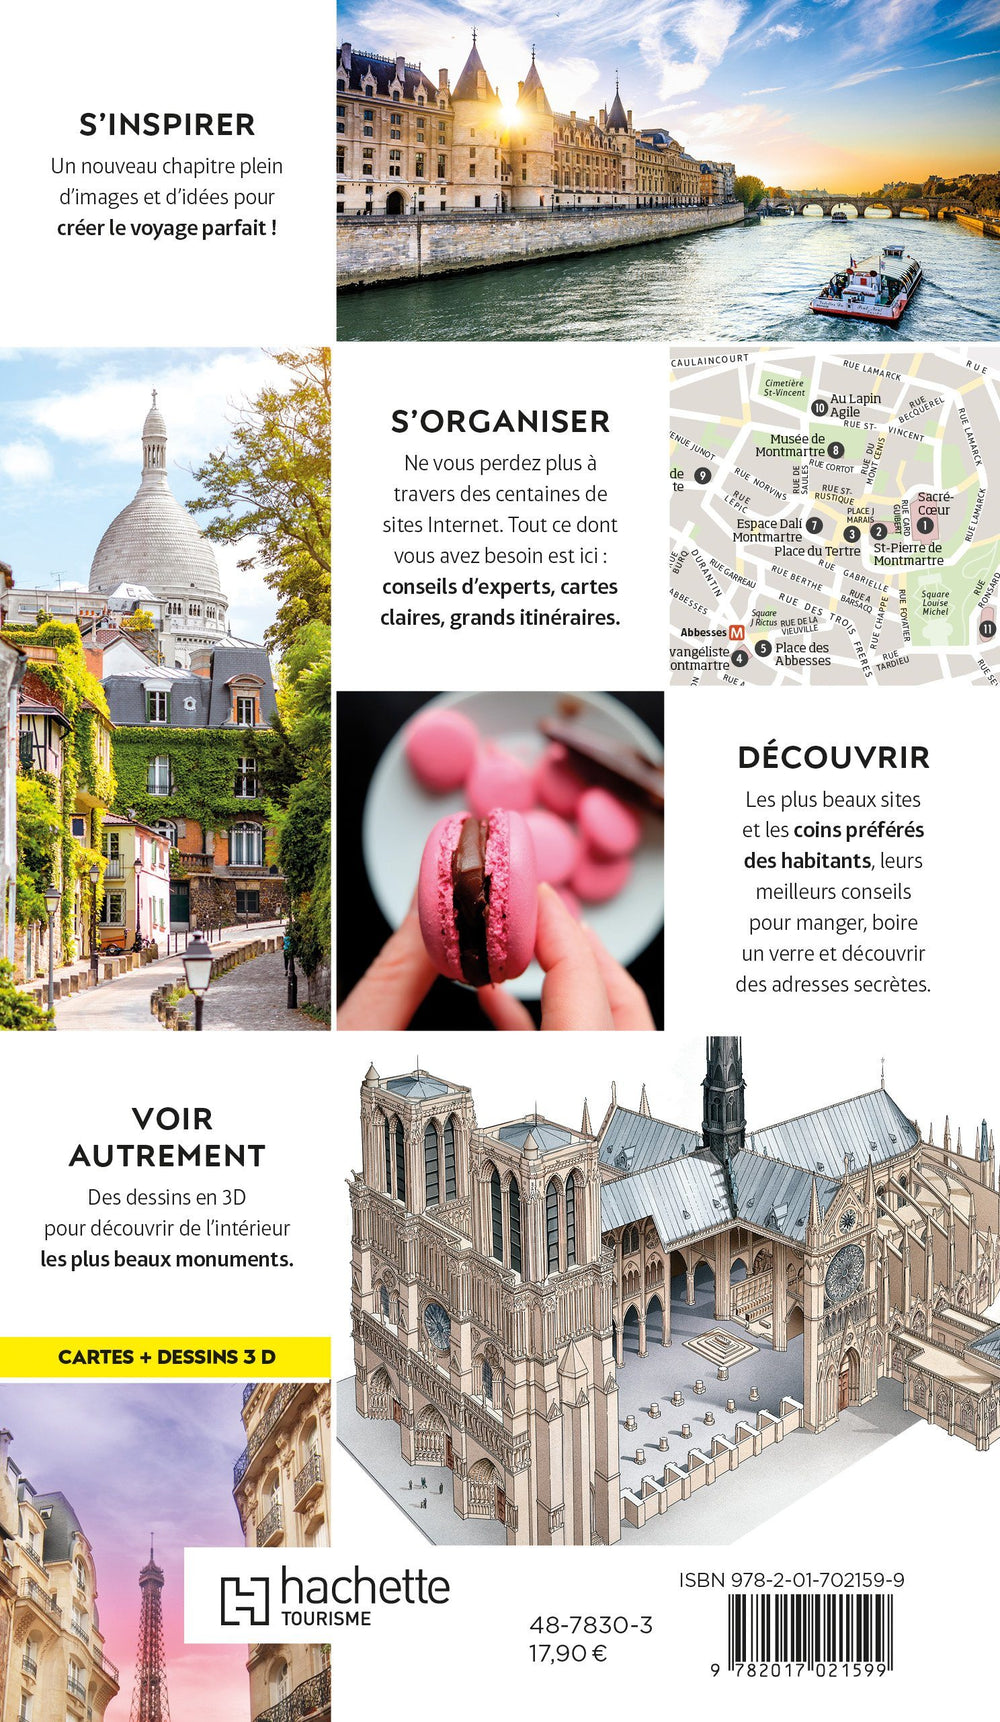 Guide de voyage - Paris | Guides Voir guide de voyage Guides Voir 